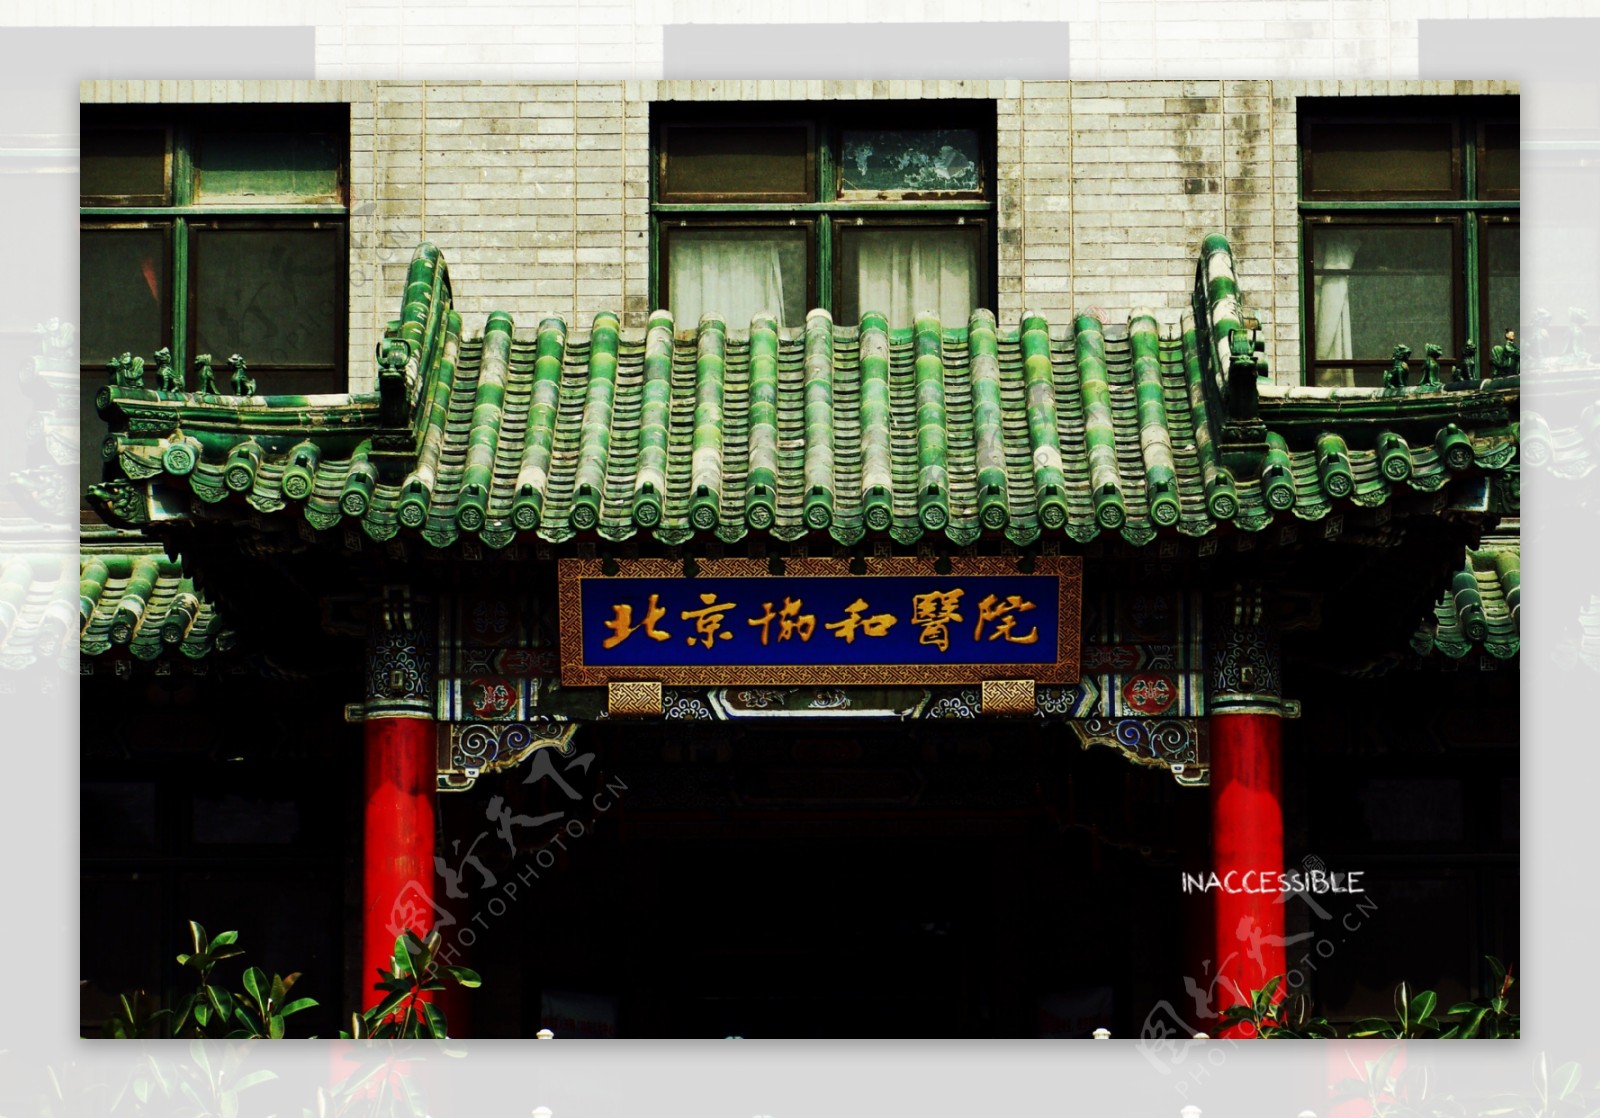 北京协和医院图片浏览-北京协和医院图片下载 - 酷吧图库